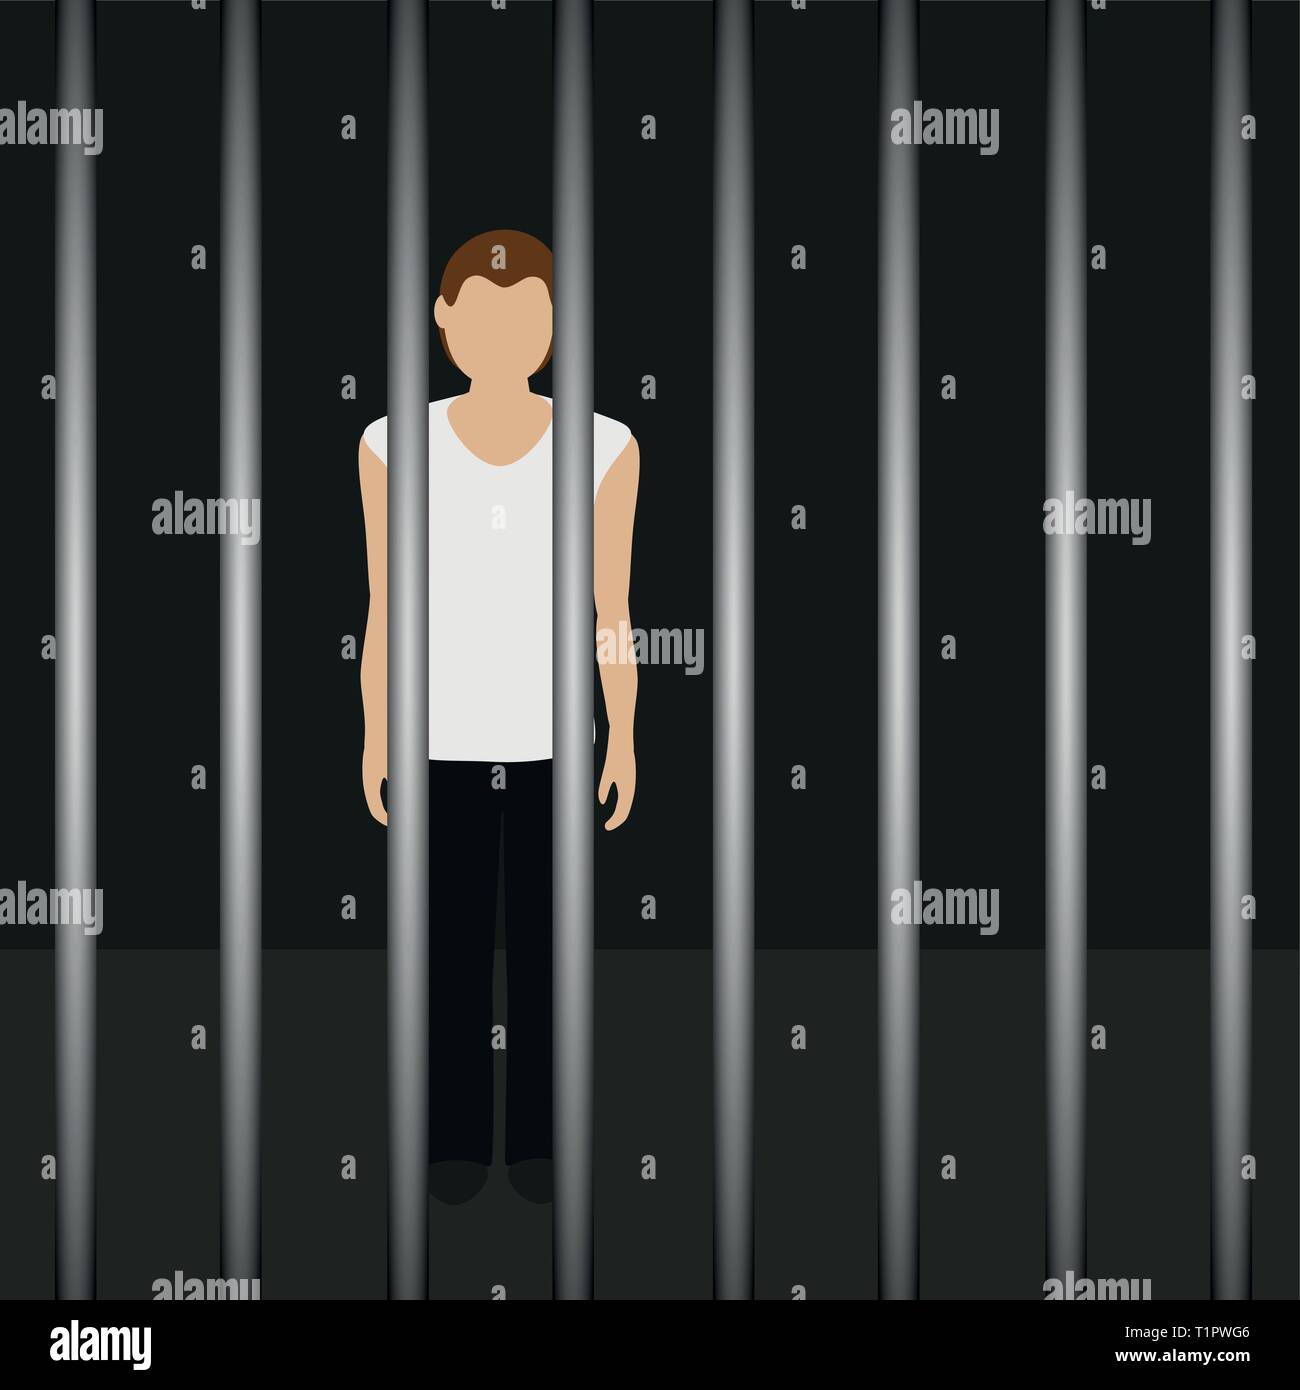 Mann in einem Gefängnis hinter Gefängnis bars Vektor-illustration EPS 10. Stock Vektor